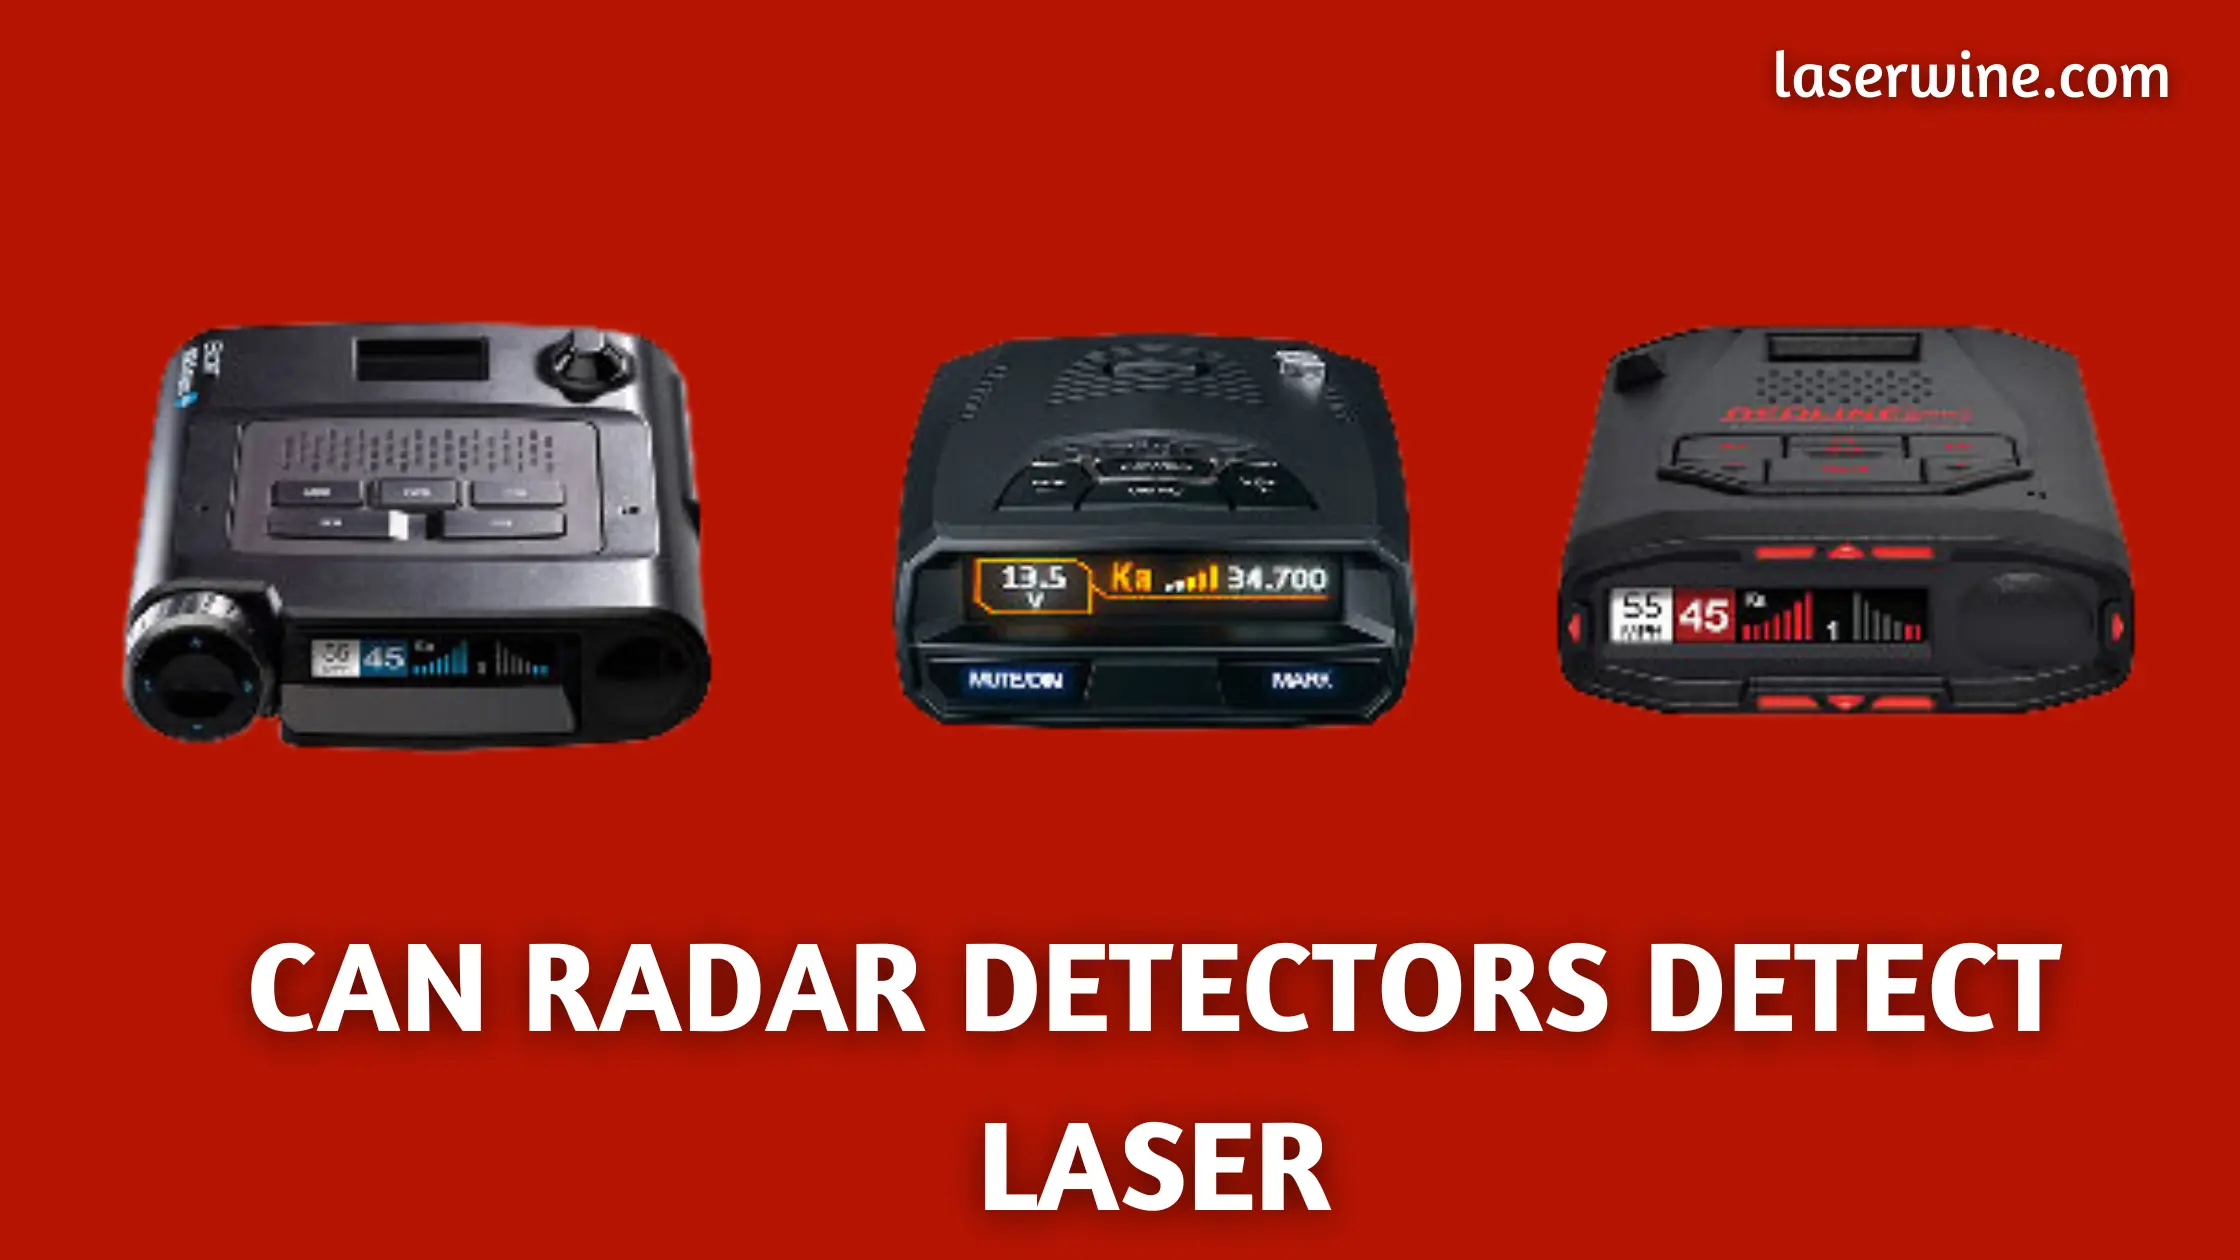 Can radar detectors detect laser